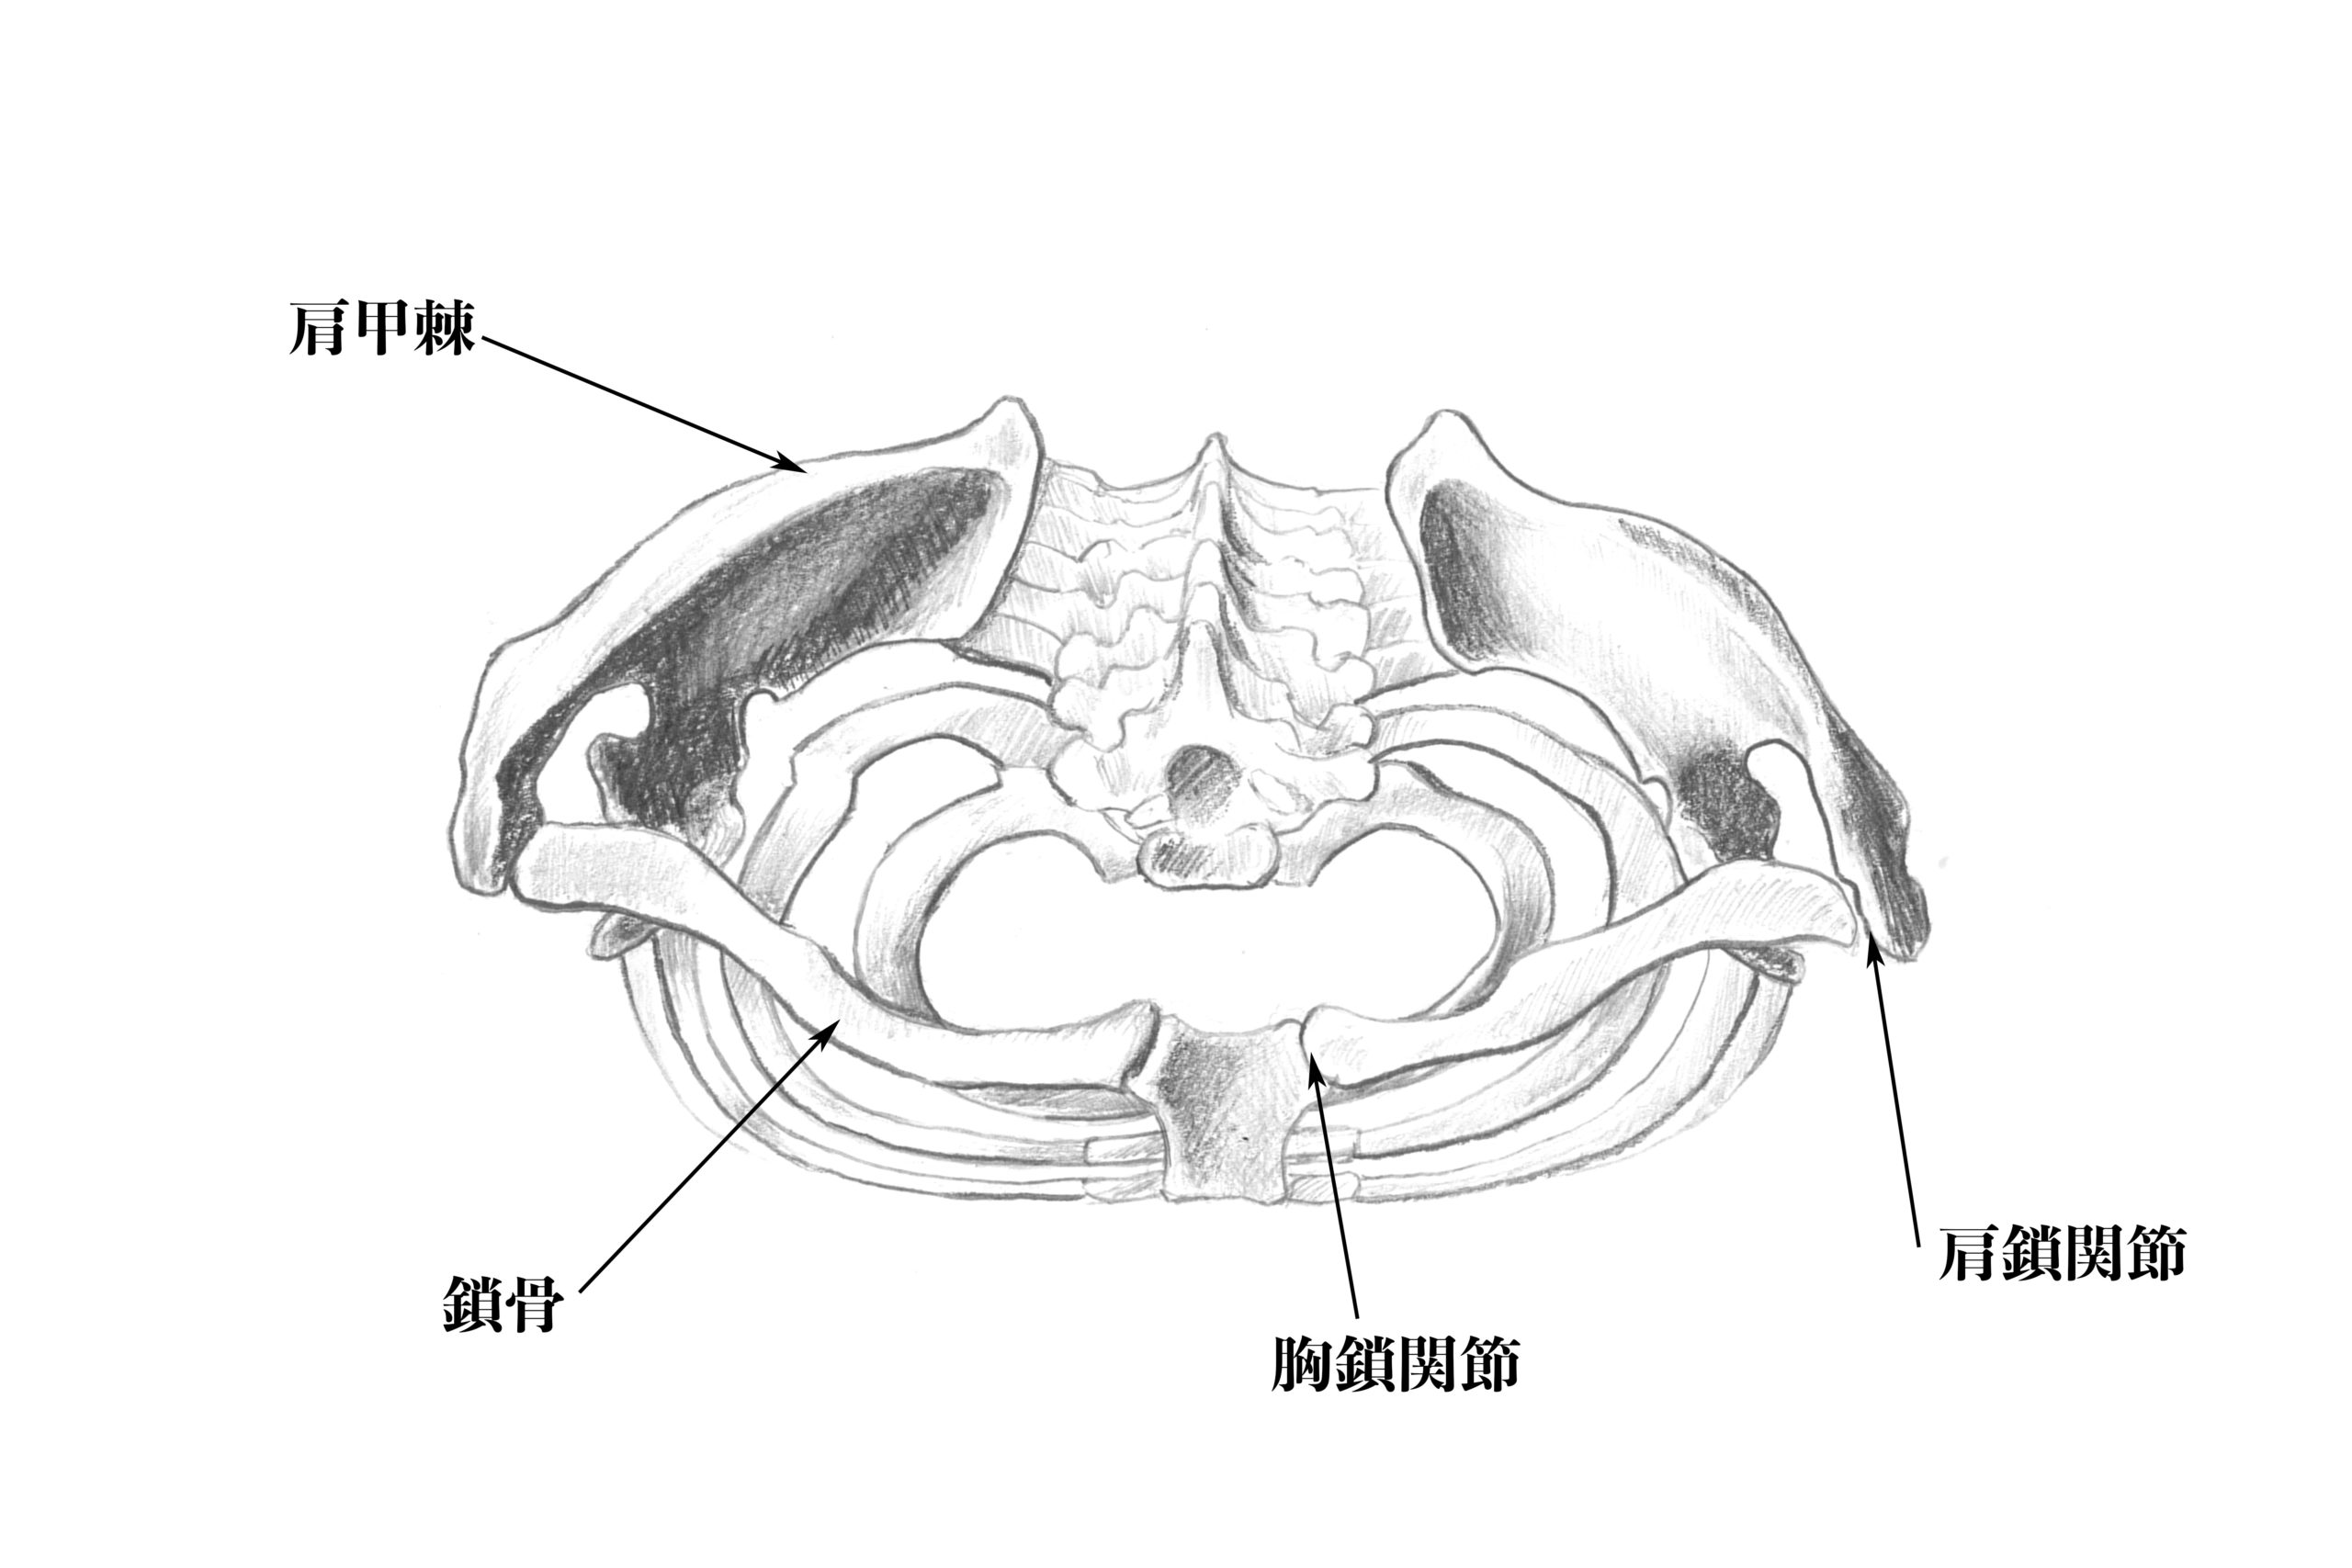 解剖学 7鎖骨と肩の関節のスケッチと構造について解説する ナツヲカケル 兼業クリエイター雑記